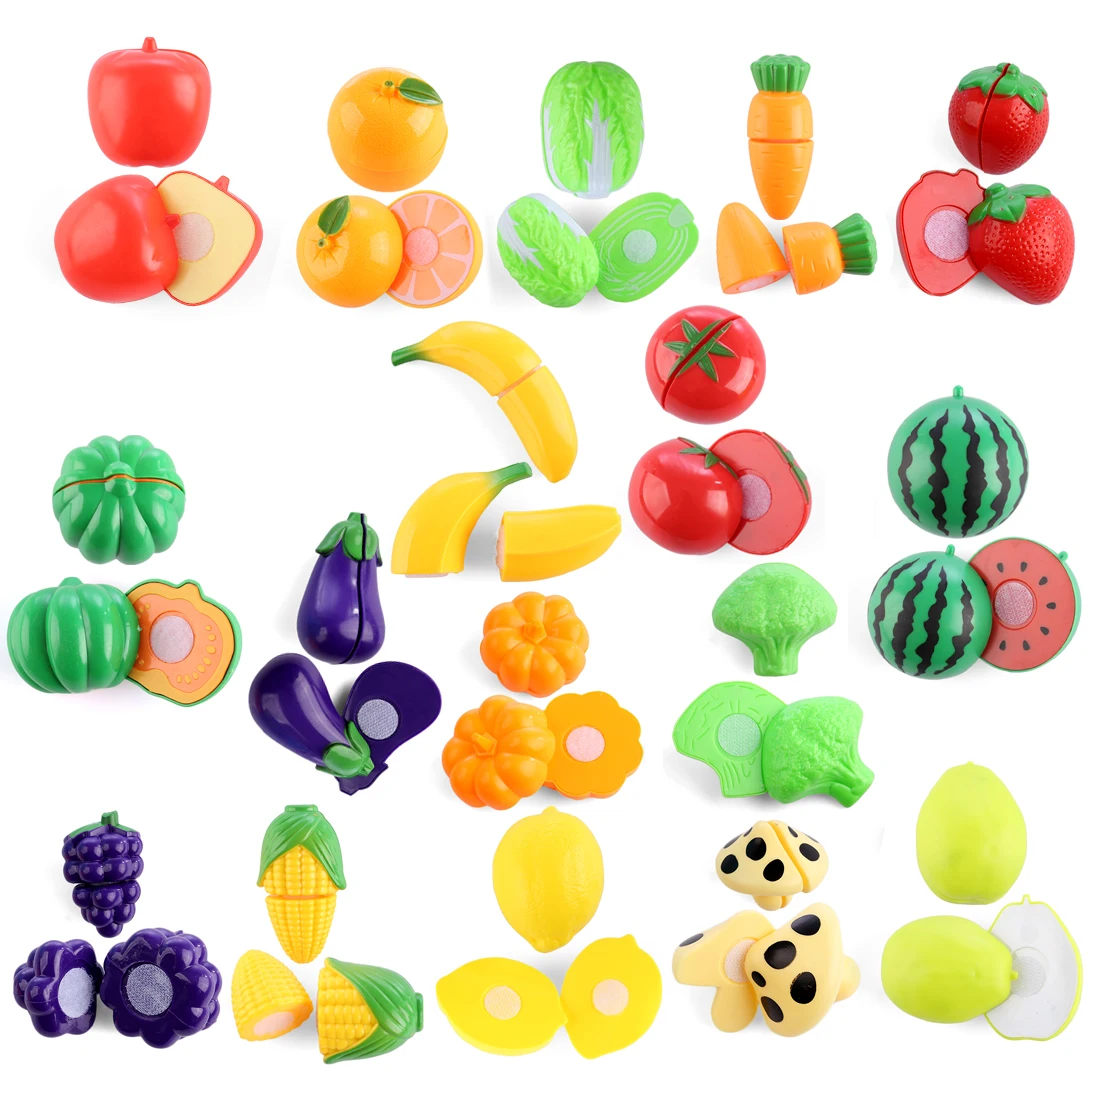 29 шт. Детские Кухонные Игрушки для резки фруктов, овощей, пластиковые ролевые игры, развивающая игрушка для детей, рождественский подарок